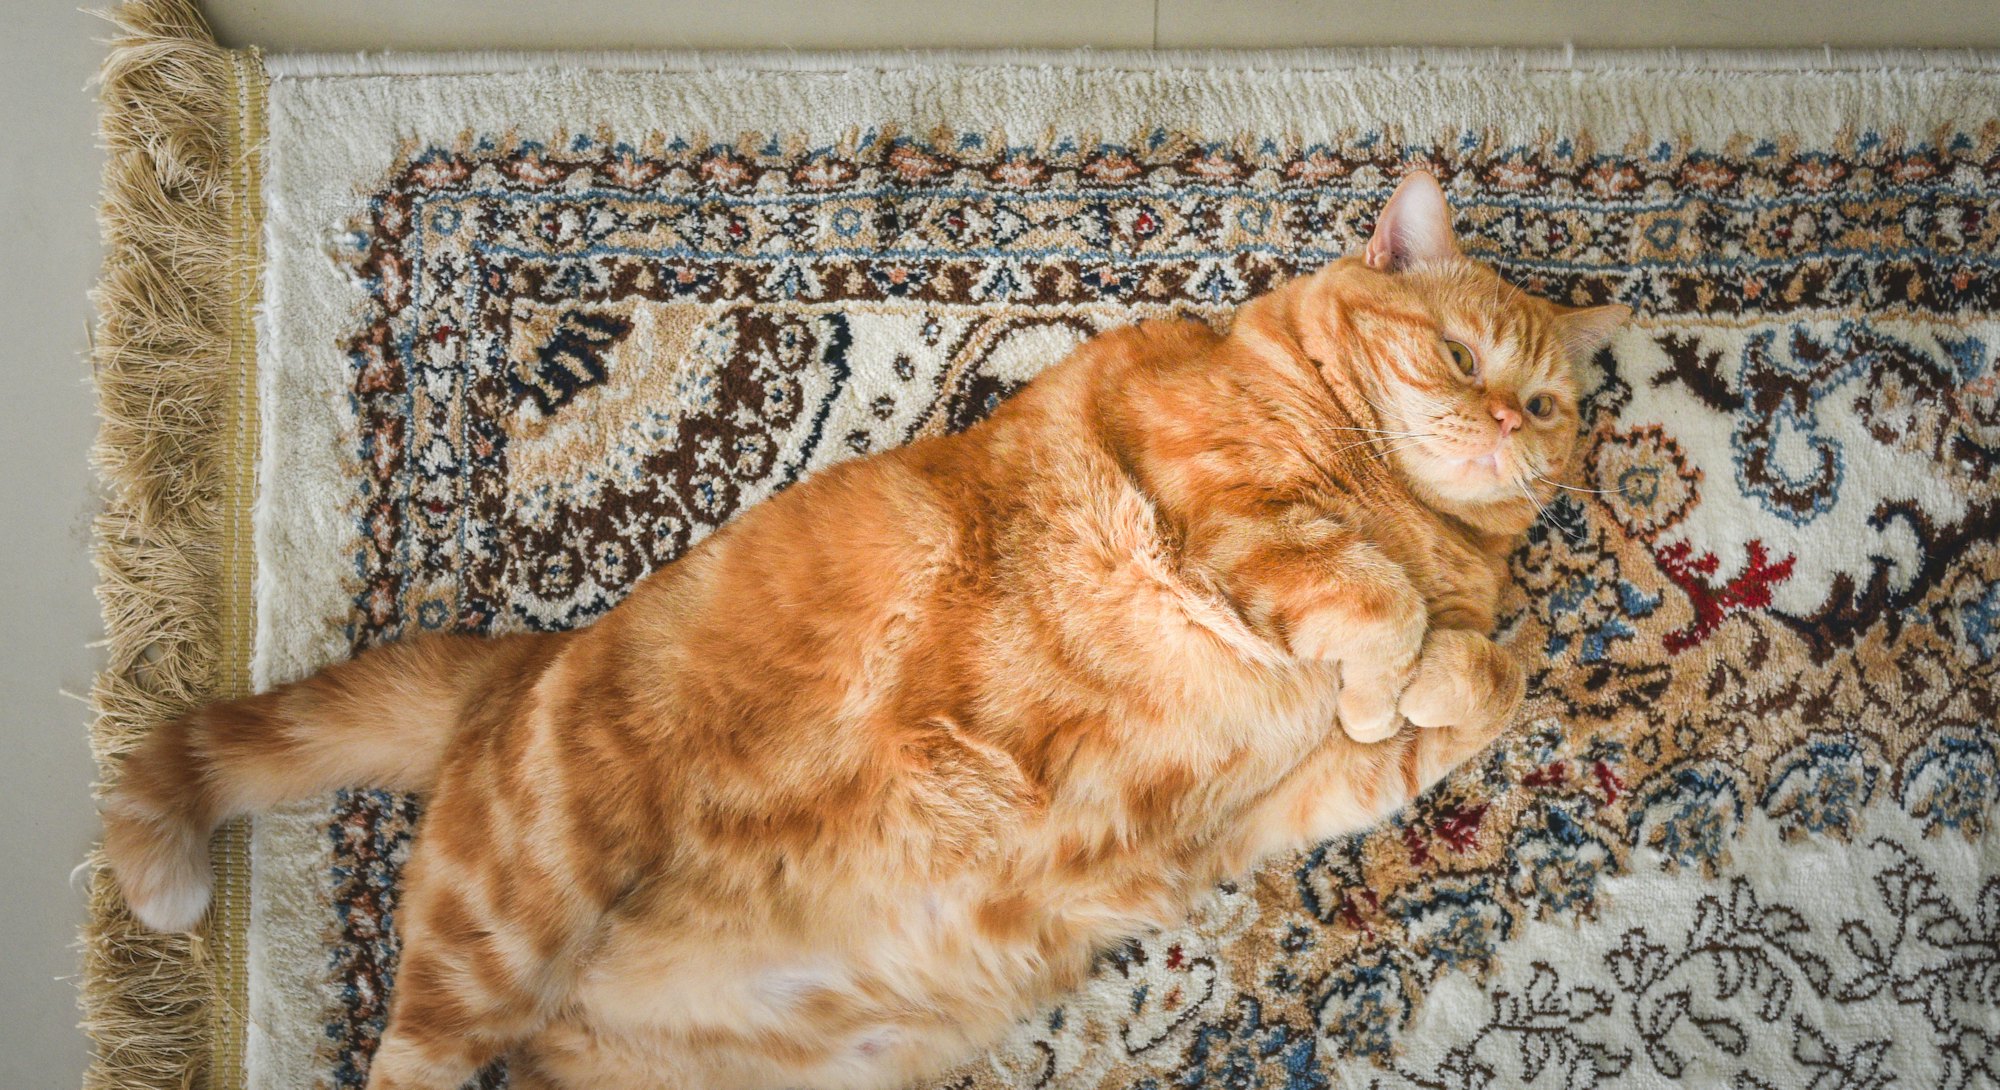 A very fat cat is lying on the сarpet on its back